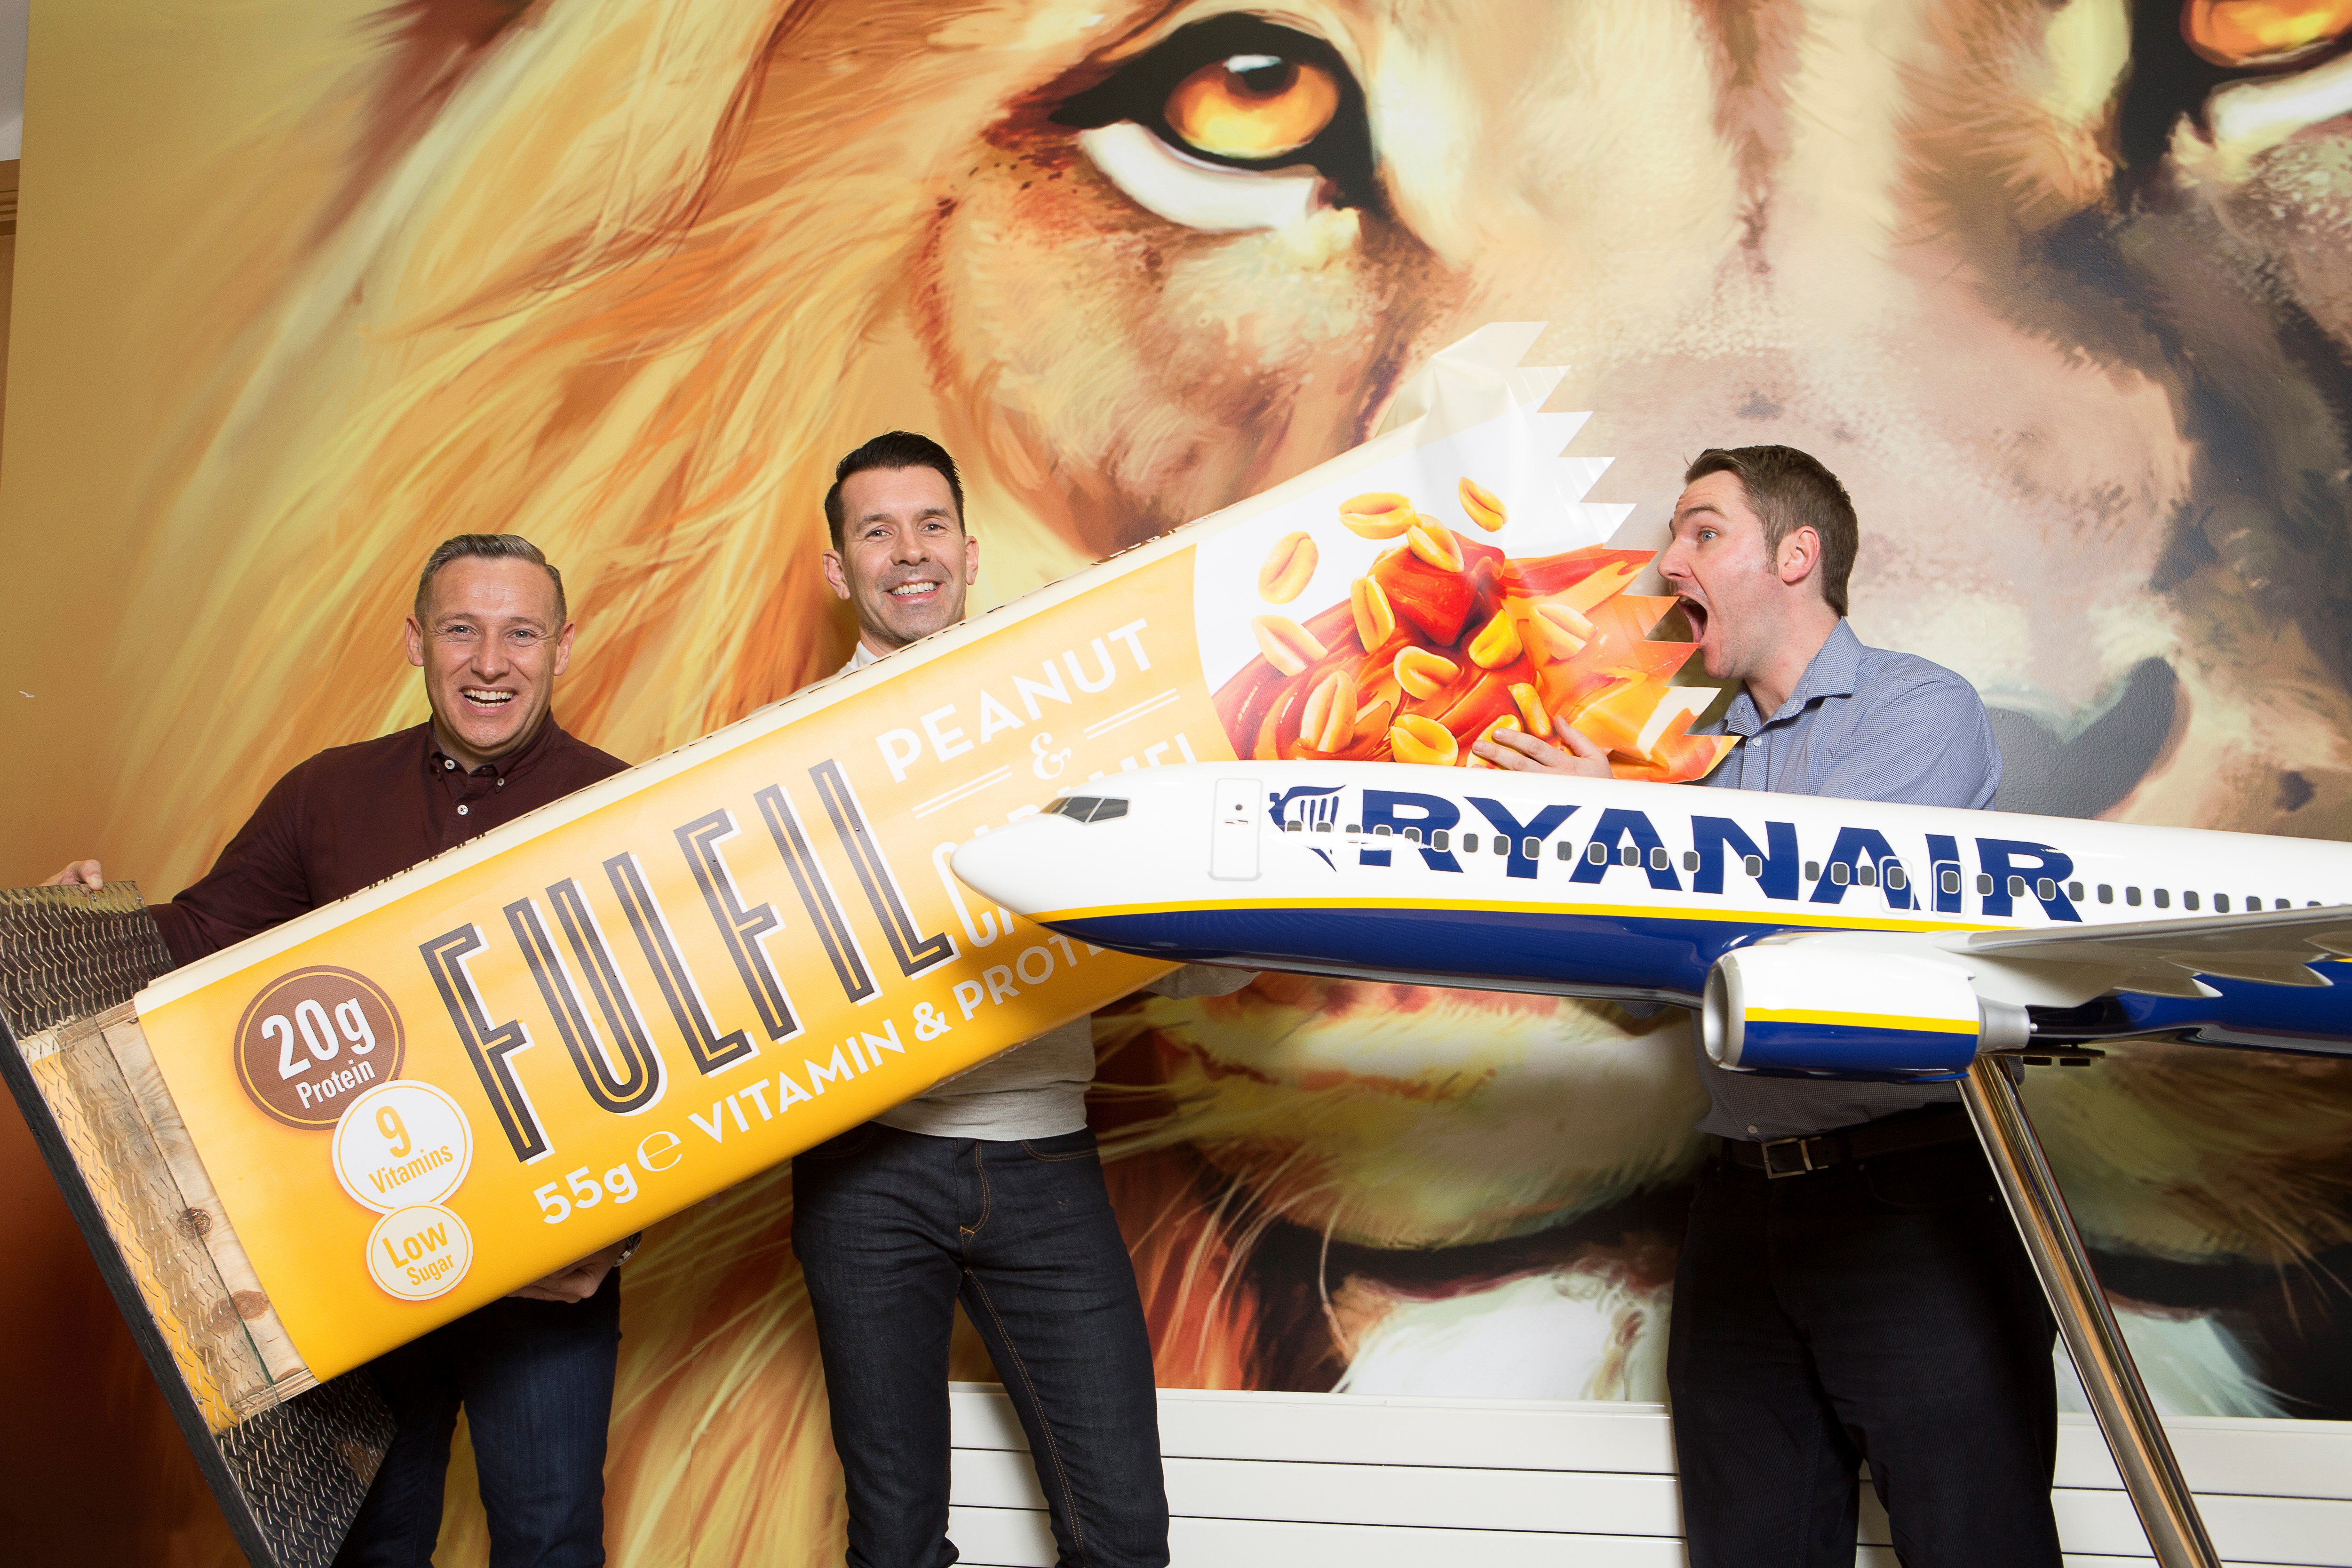 Ryanair Lança Novas Opções Saudáveis No Seu Menu A Bordo “Getaway Café”